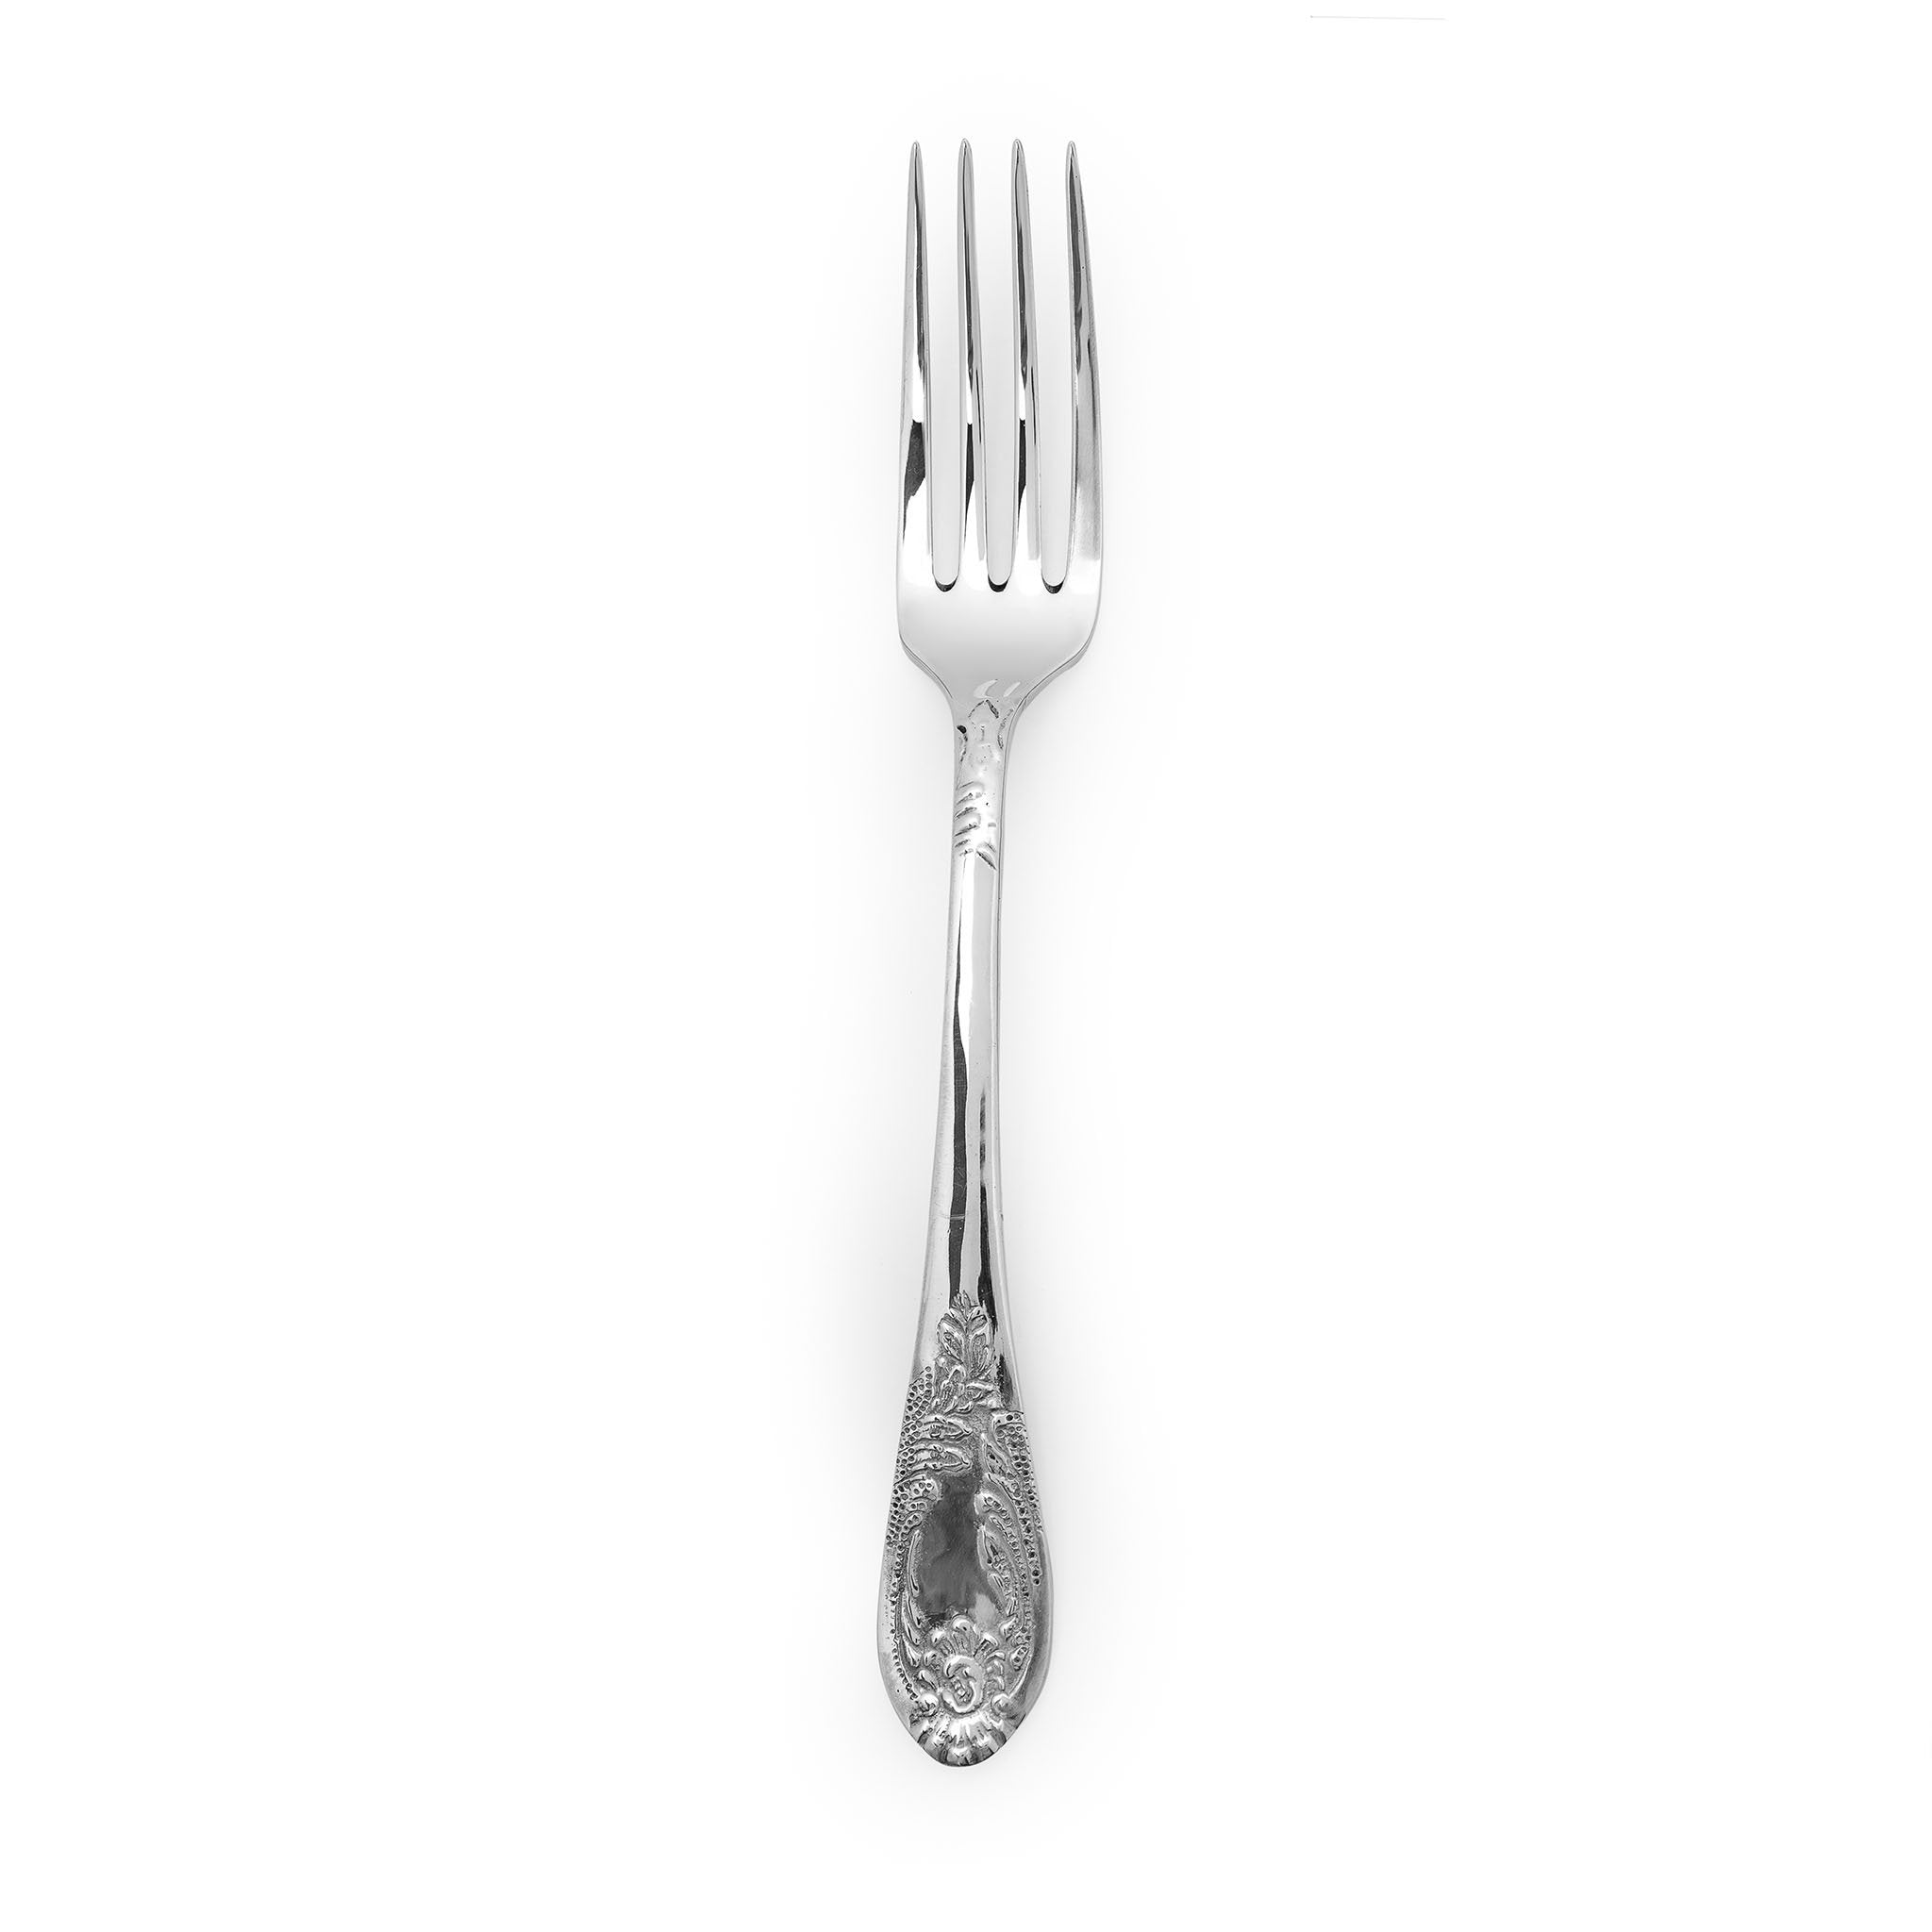 Serving Fork